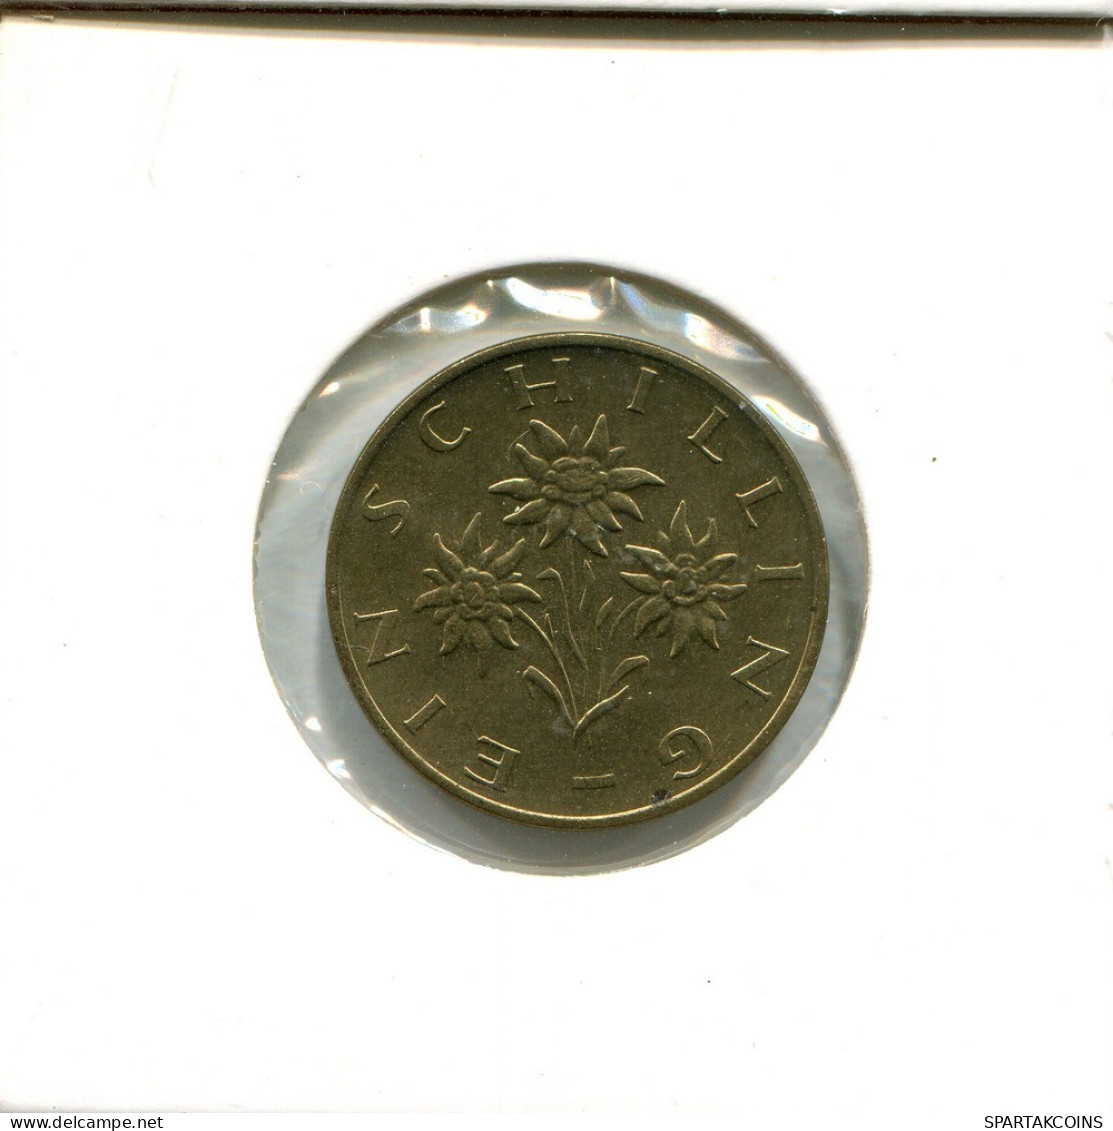 1 SCHILLING 1982 AUSTRIA Moneda #AT642.E.A - Oesterreich